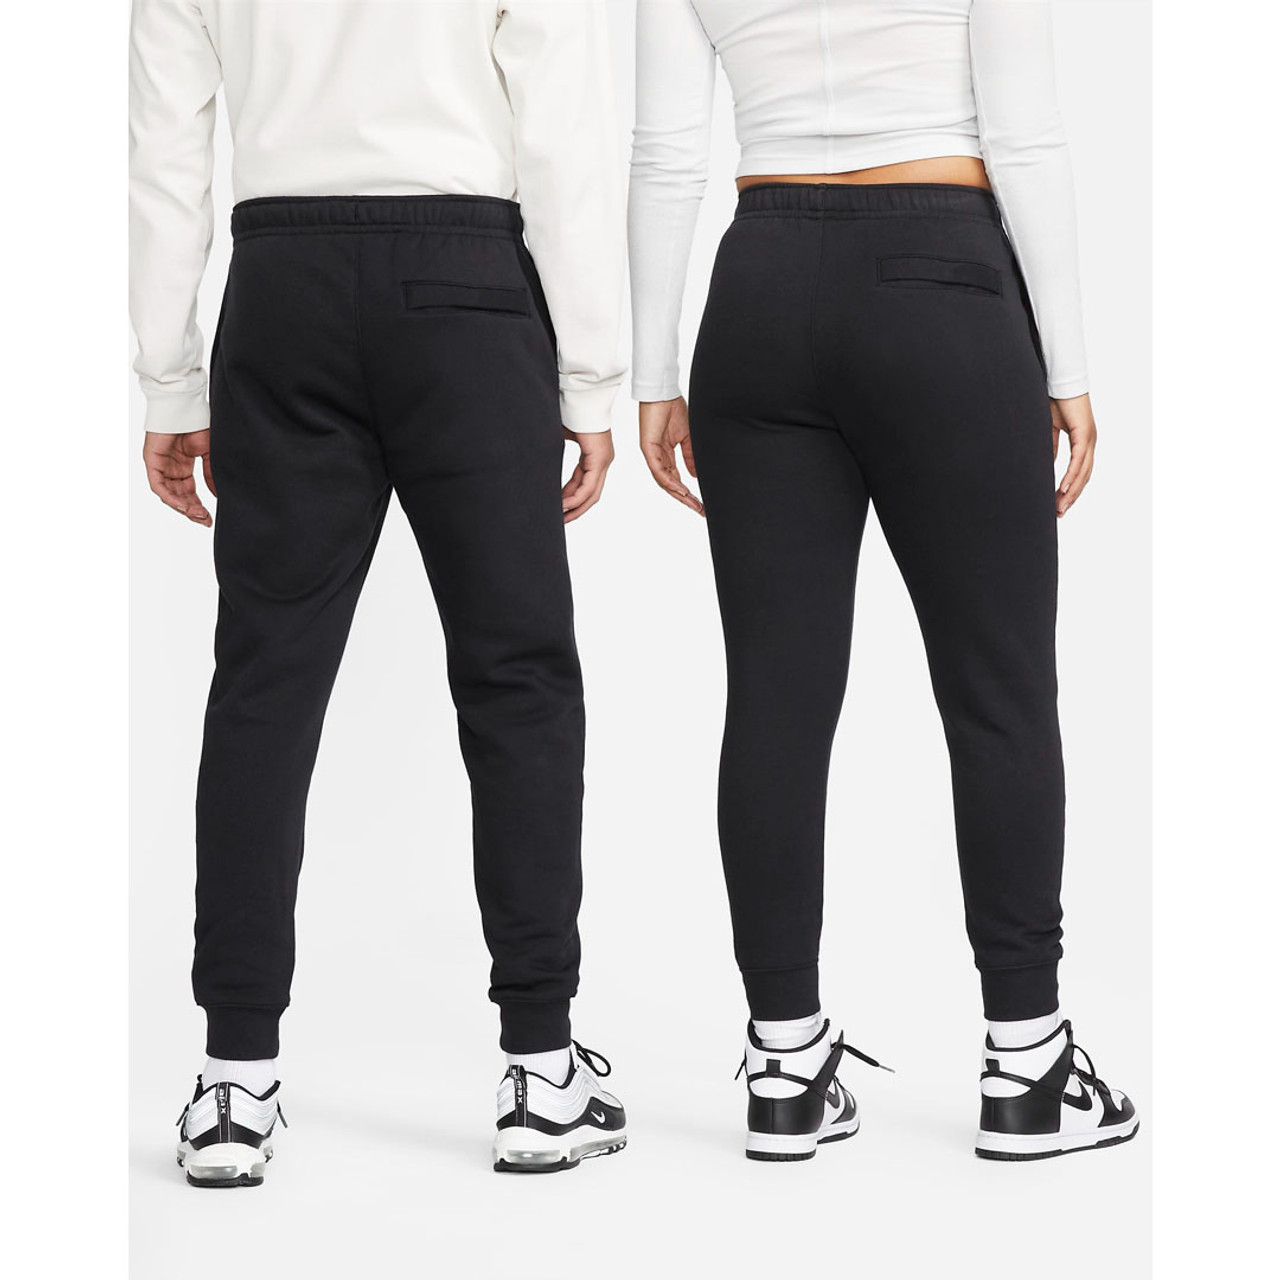 Nike, Sportswear Club Fleece Women's Mid-Rise Slim Joggers, Black/White